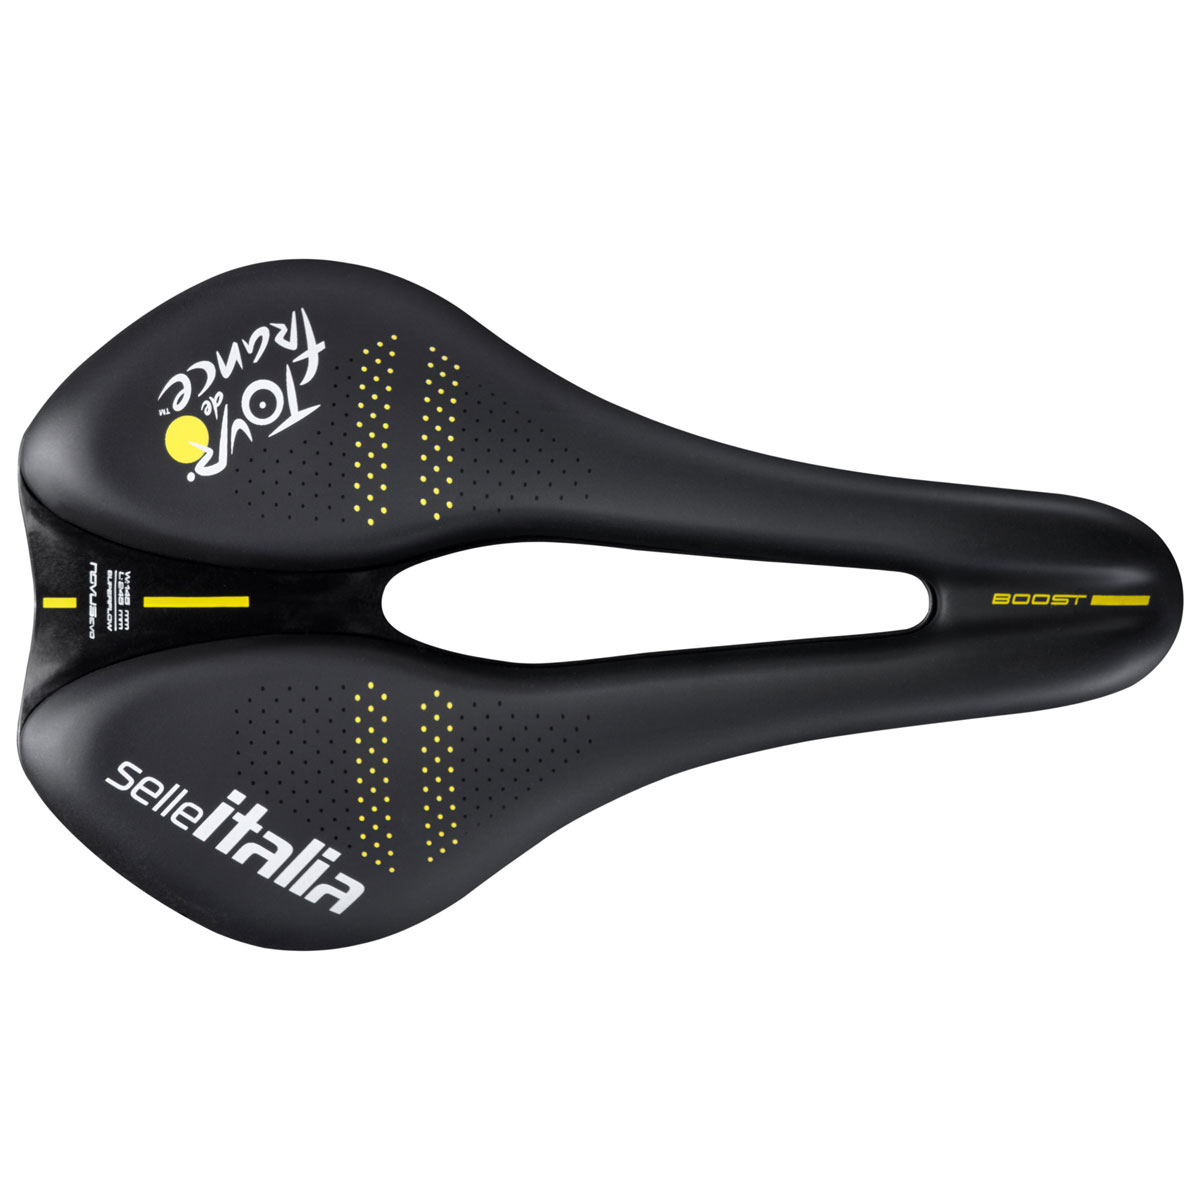 Produktbild von Selle Italia Novus Boost EVO Superflow - Tour de France™ 2023 Collection - Sattel - L3